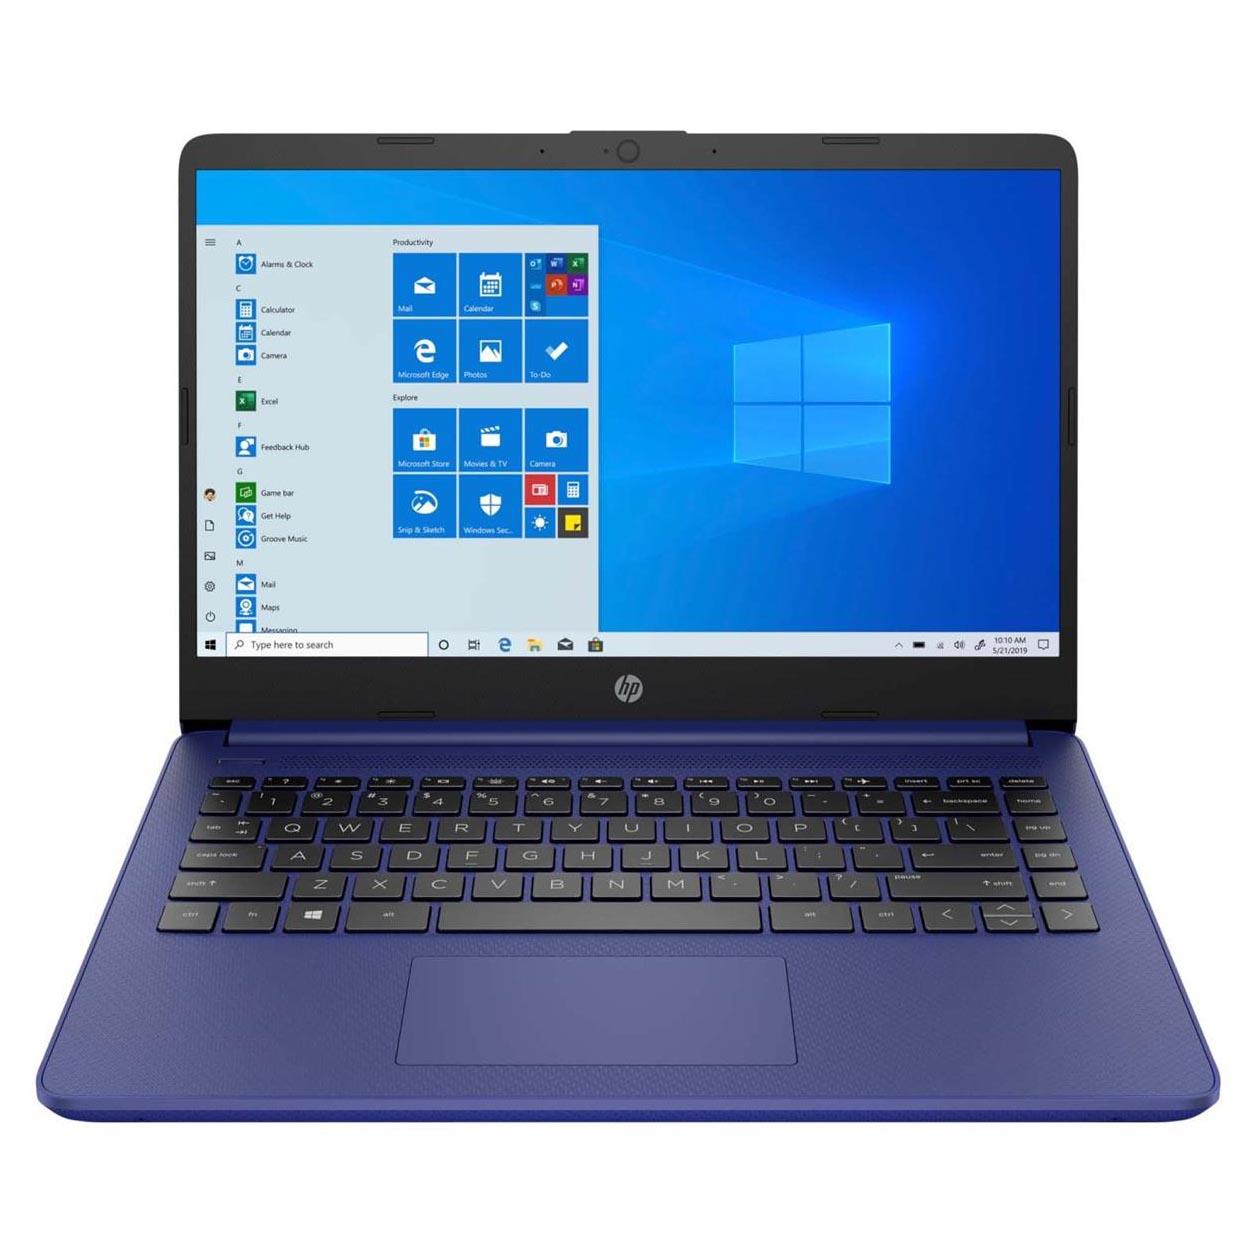 Ноутбук HP 14-dq0050nr, 14 HD Сенсорный, 4Гб/64Гб, Celeron N4020, сине-фиолетовый, английская клавиатура ноутбук hp 14 dq0080nr 14 hd сенсорный 4гб 64гб celeron n4020 белый английская клавиатура